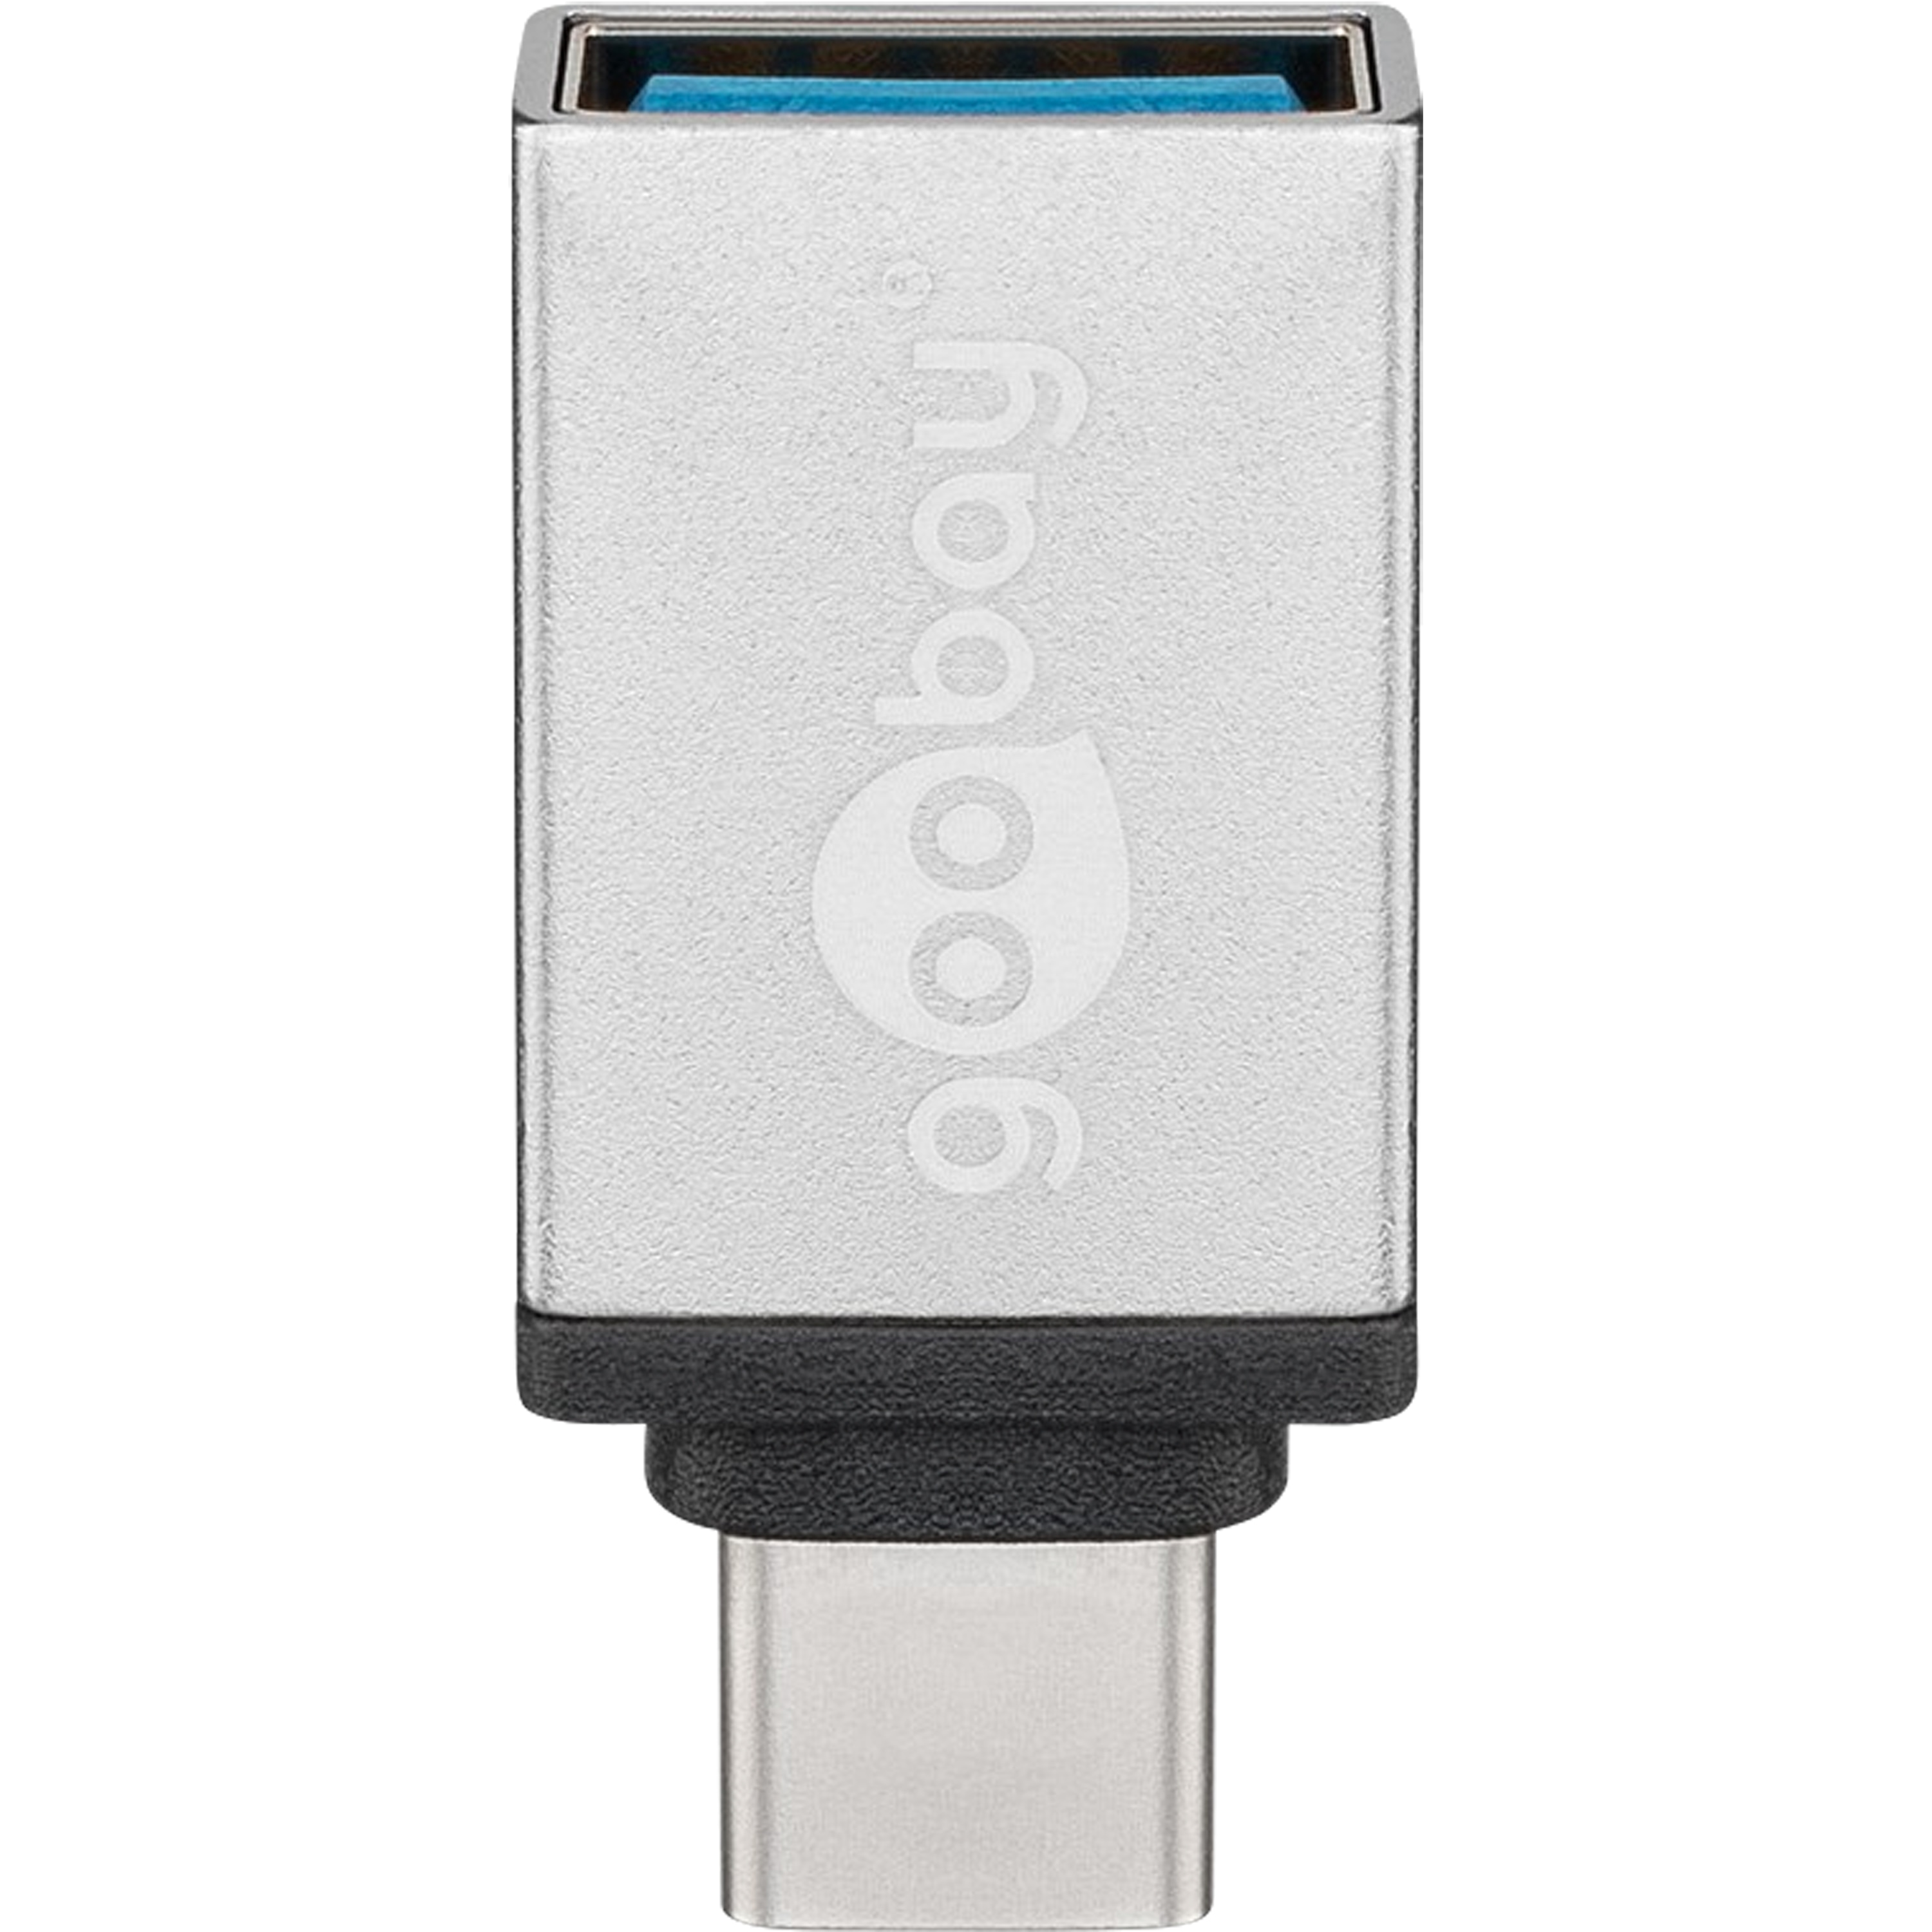 GOOBAY Adapter USB-C™ auf USB 2.0 Micro-B, zum Verbinden eines USB-C™ Gerätes mit einem USB 2.0 Micro-B Kabel, sehr einfache Bedienbarkeit